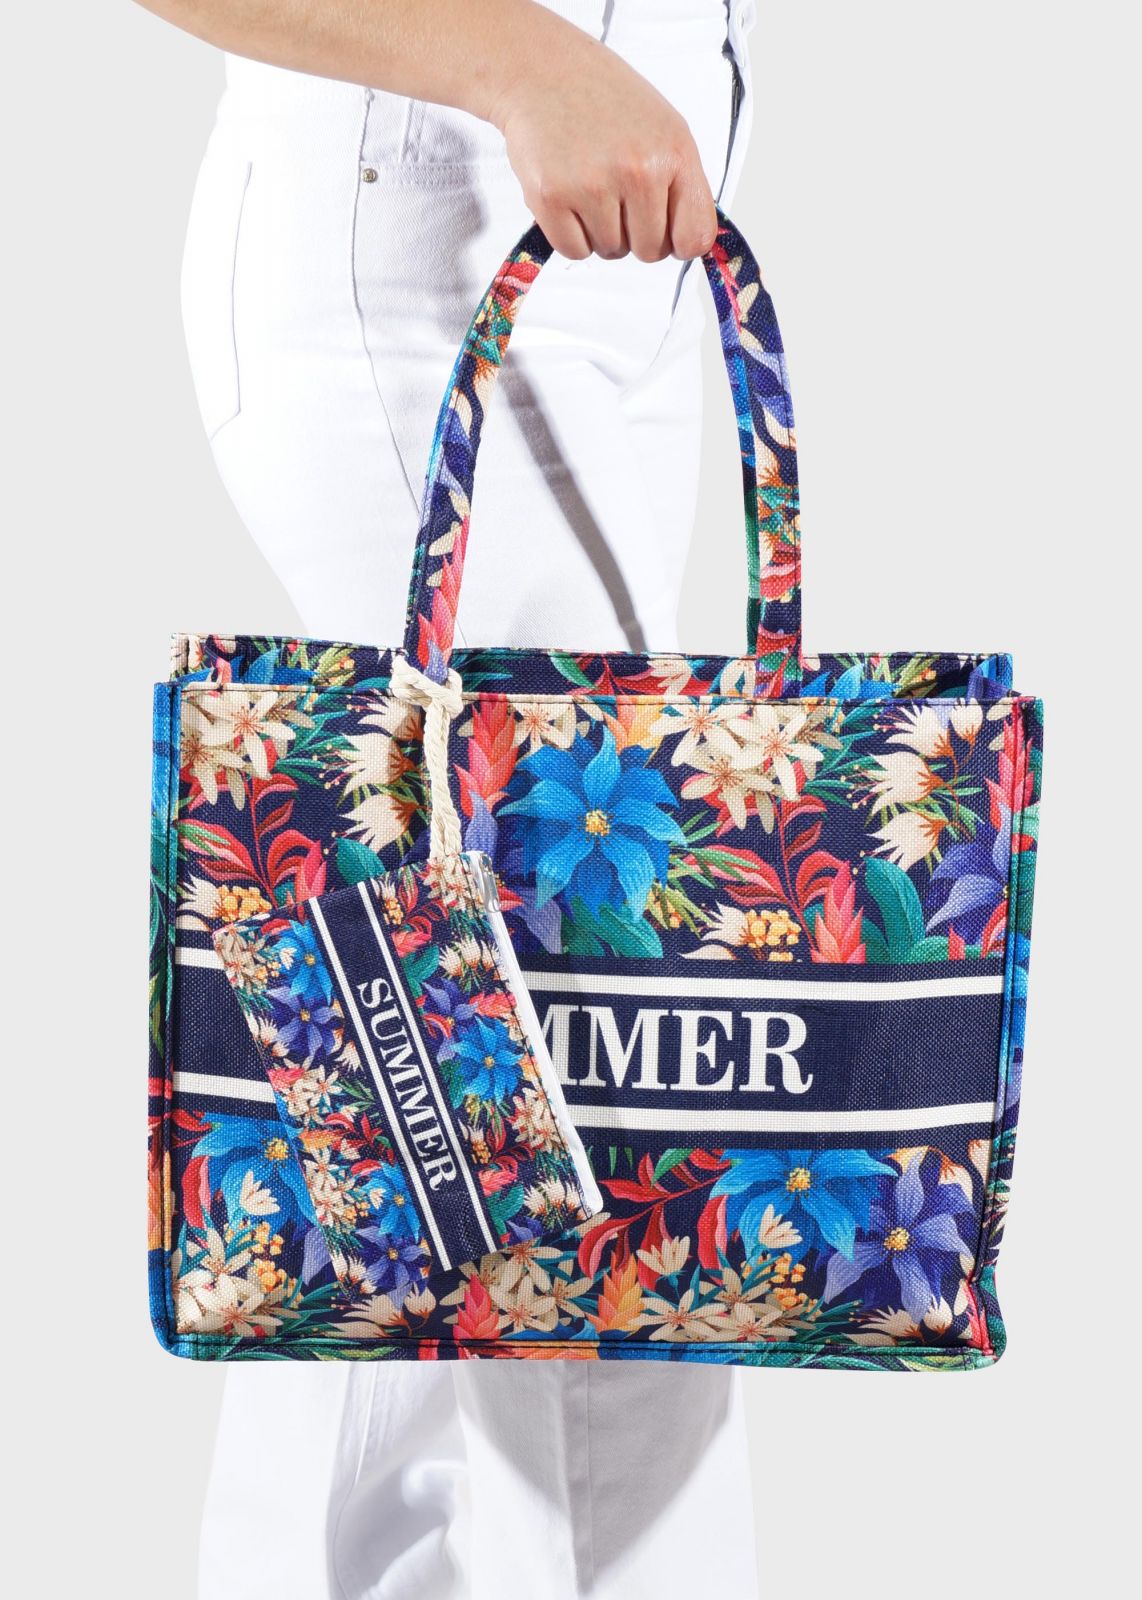 Γυναικεία τσάντα παραλίας φάσα logo "SUMMER"